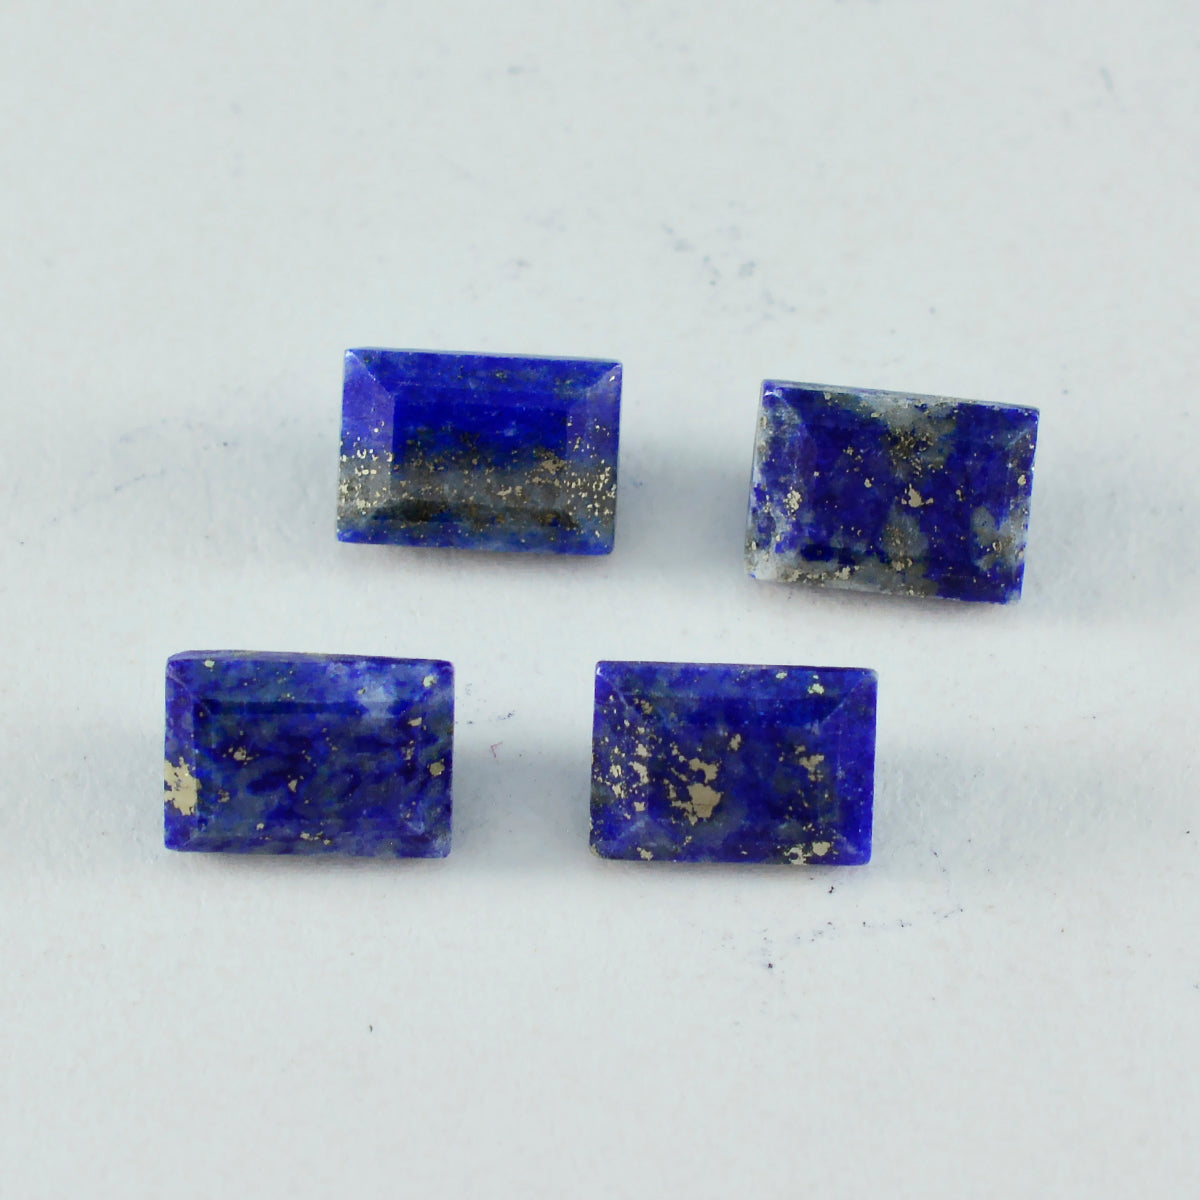 Riyogems 1 Stück echter blauer Lapislazuli, facettiert, 8 x 10 mm, achteckige Form, gut aussehende, hochwertige lose Edelsteine